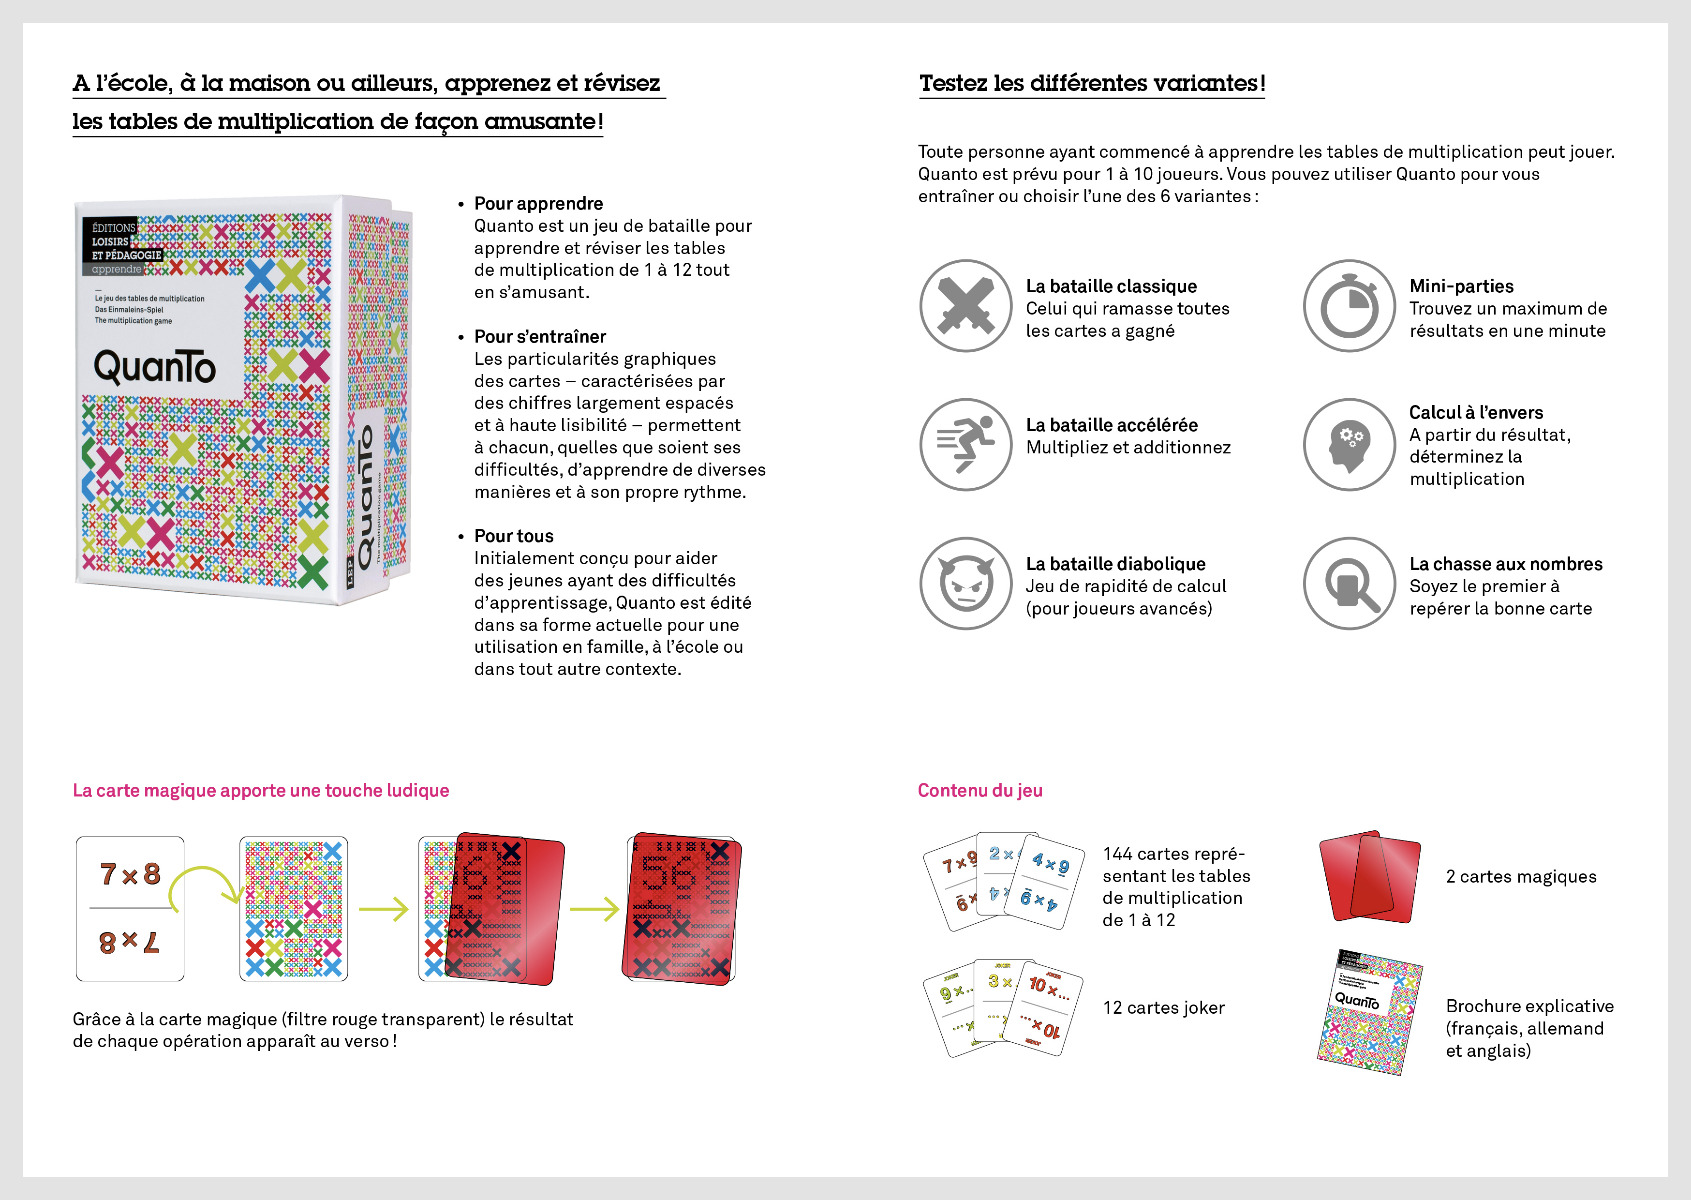 Flyer de présentation du jeu d'apprentissage des tables de multiplication «Quanto»